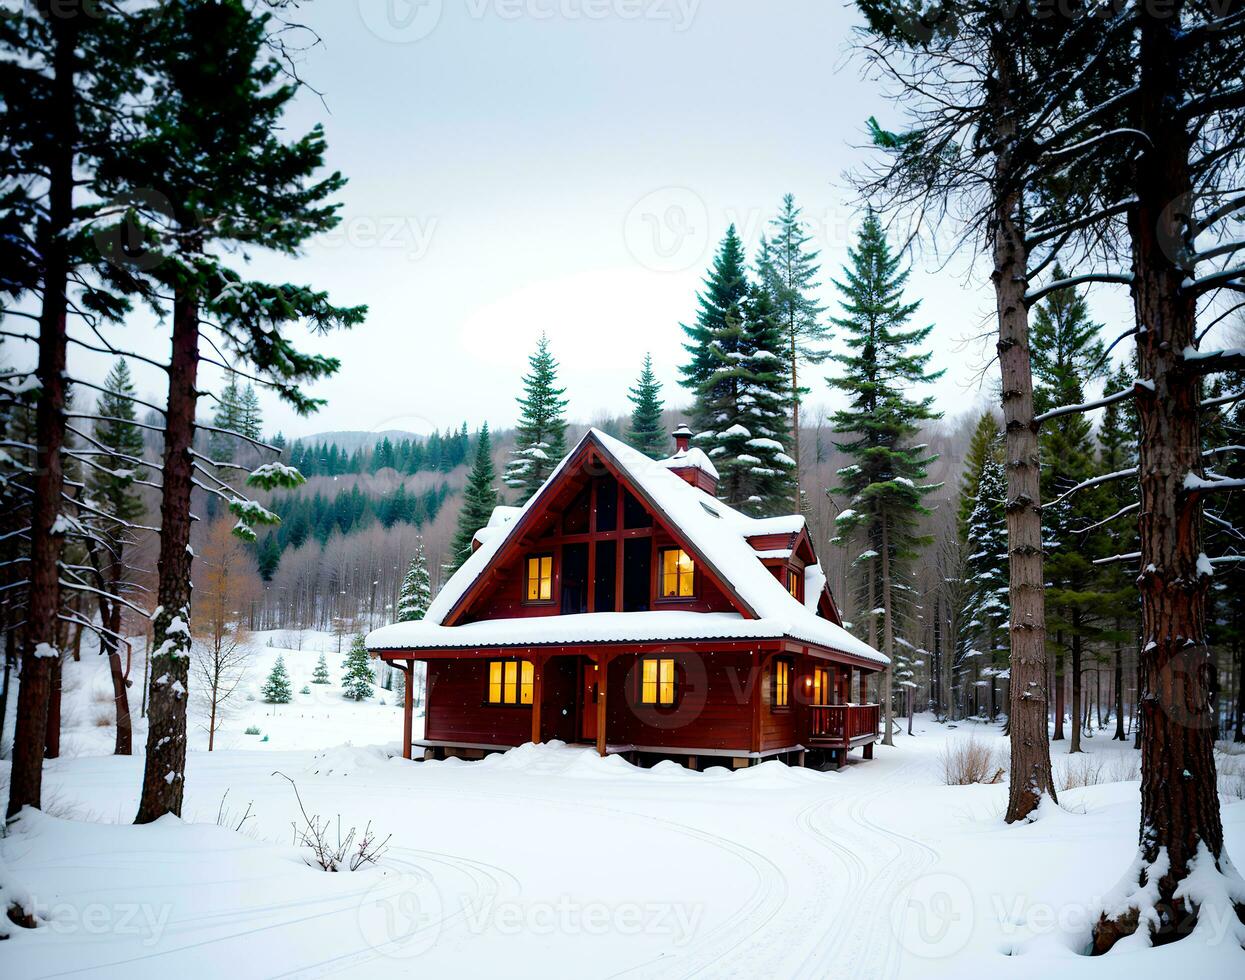 realista foto paisaje de invierno nieve bosque y madera casa